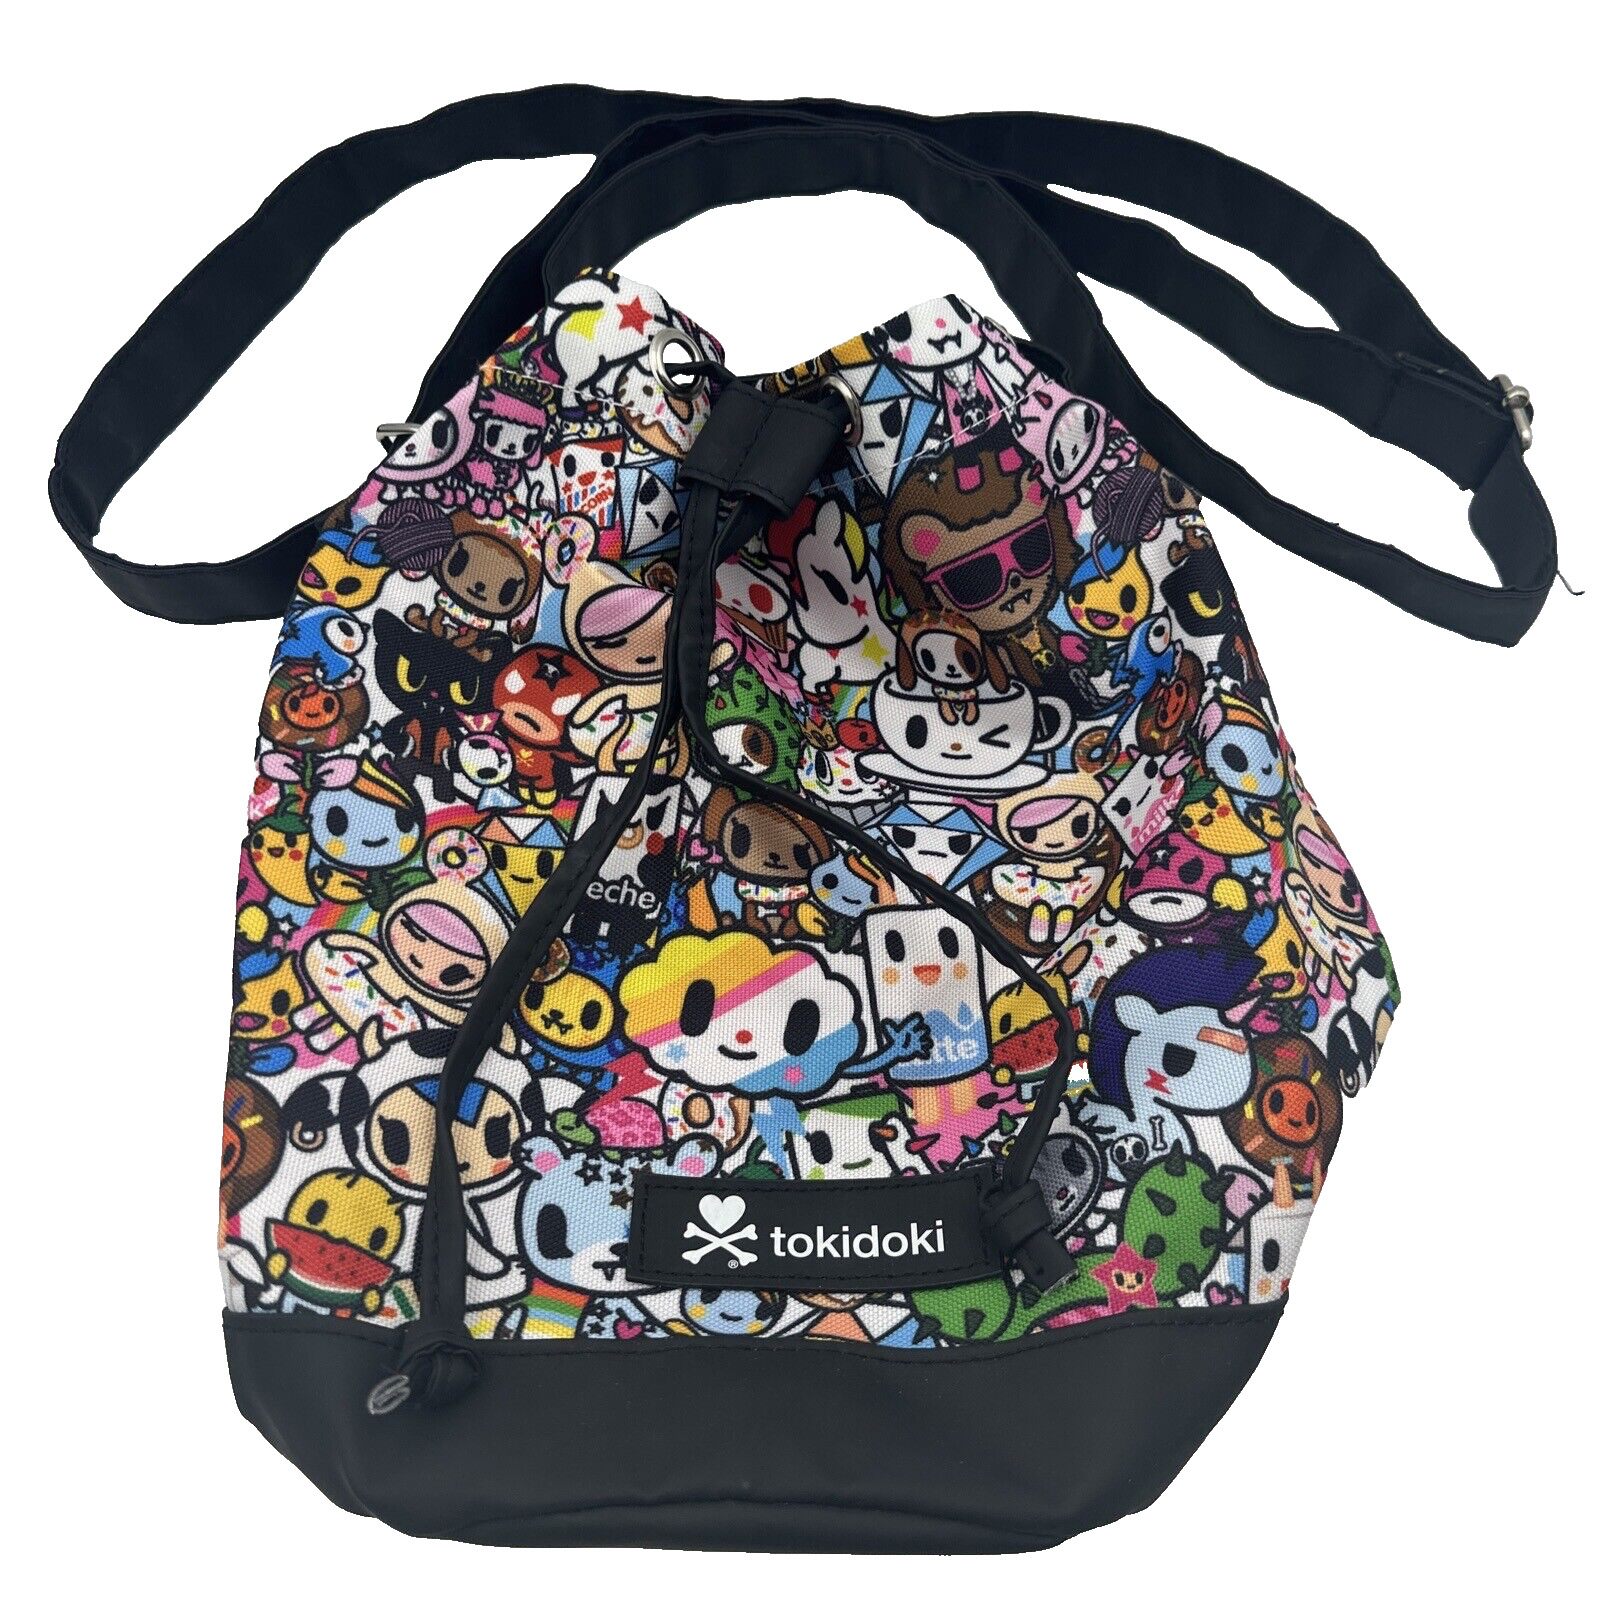 Tokidoki Shoulder Bag Colorful Kawaii Hello Kitty Anime